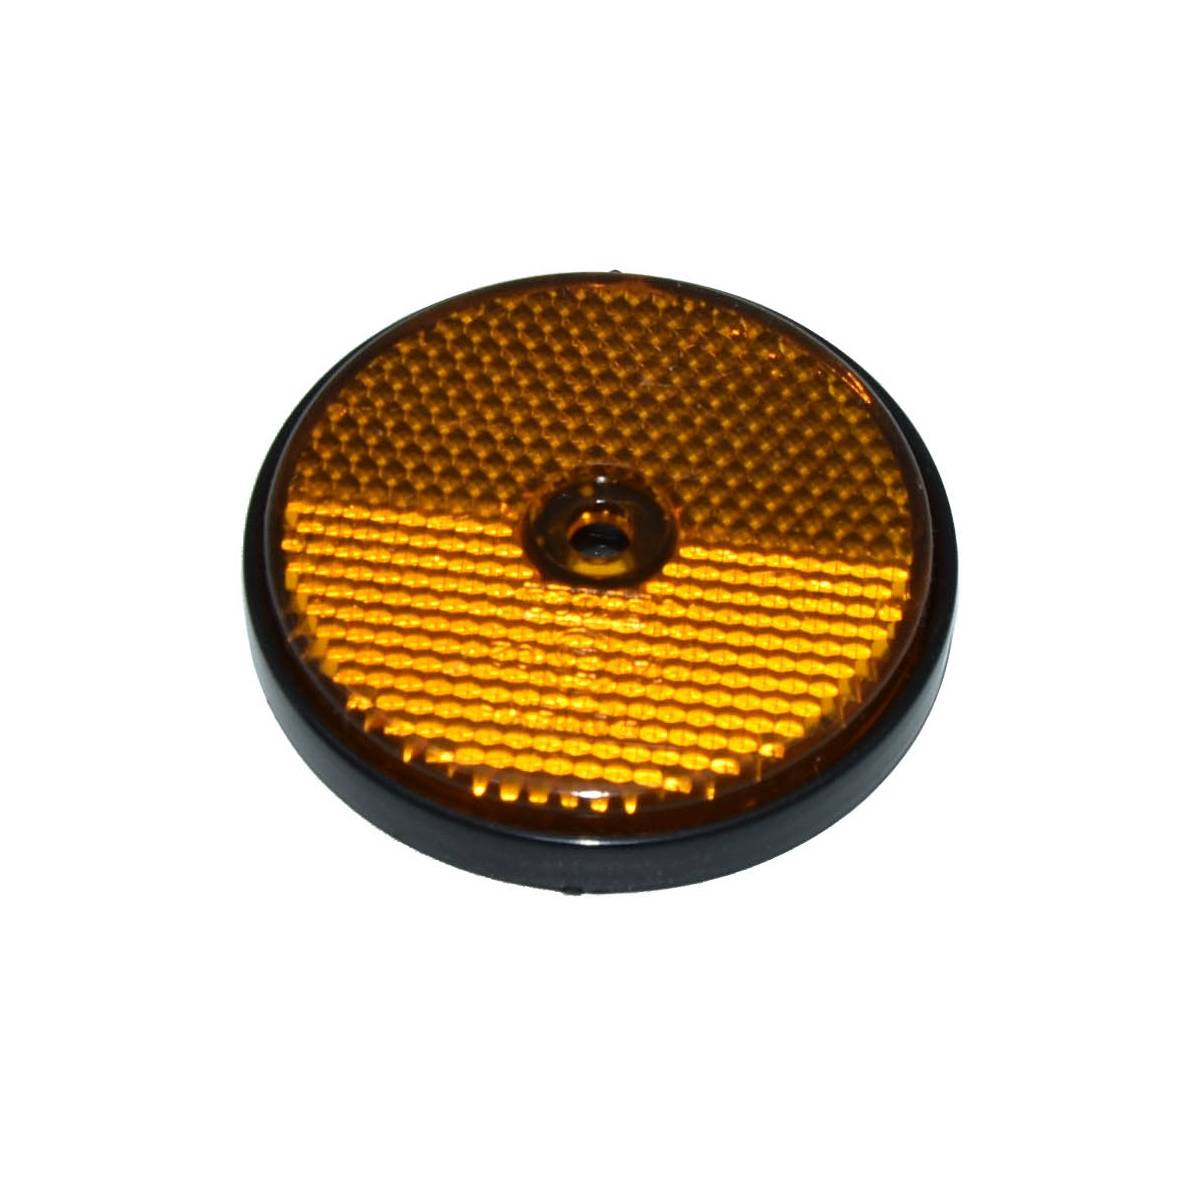 10x Reflektor orange / gelb rund 60mm mit Schraubloch - Trailerexperts